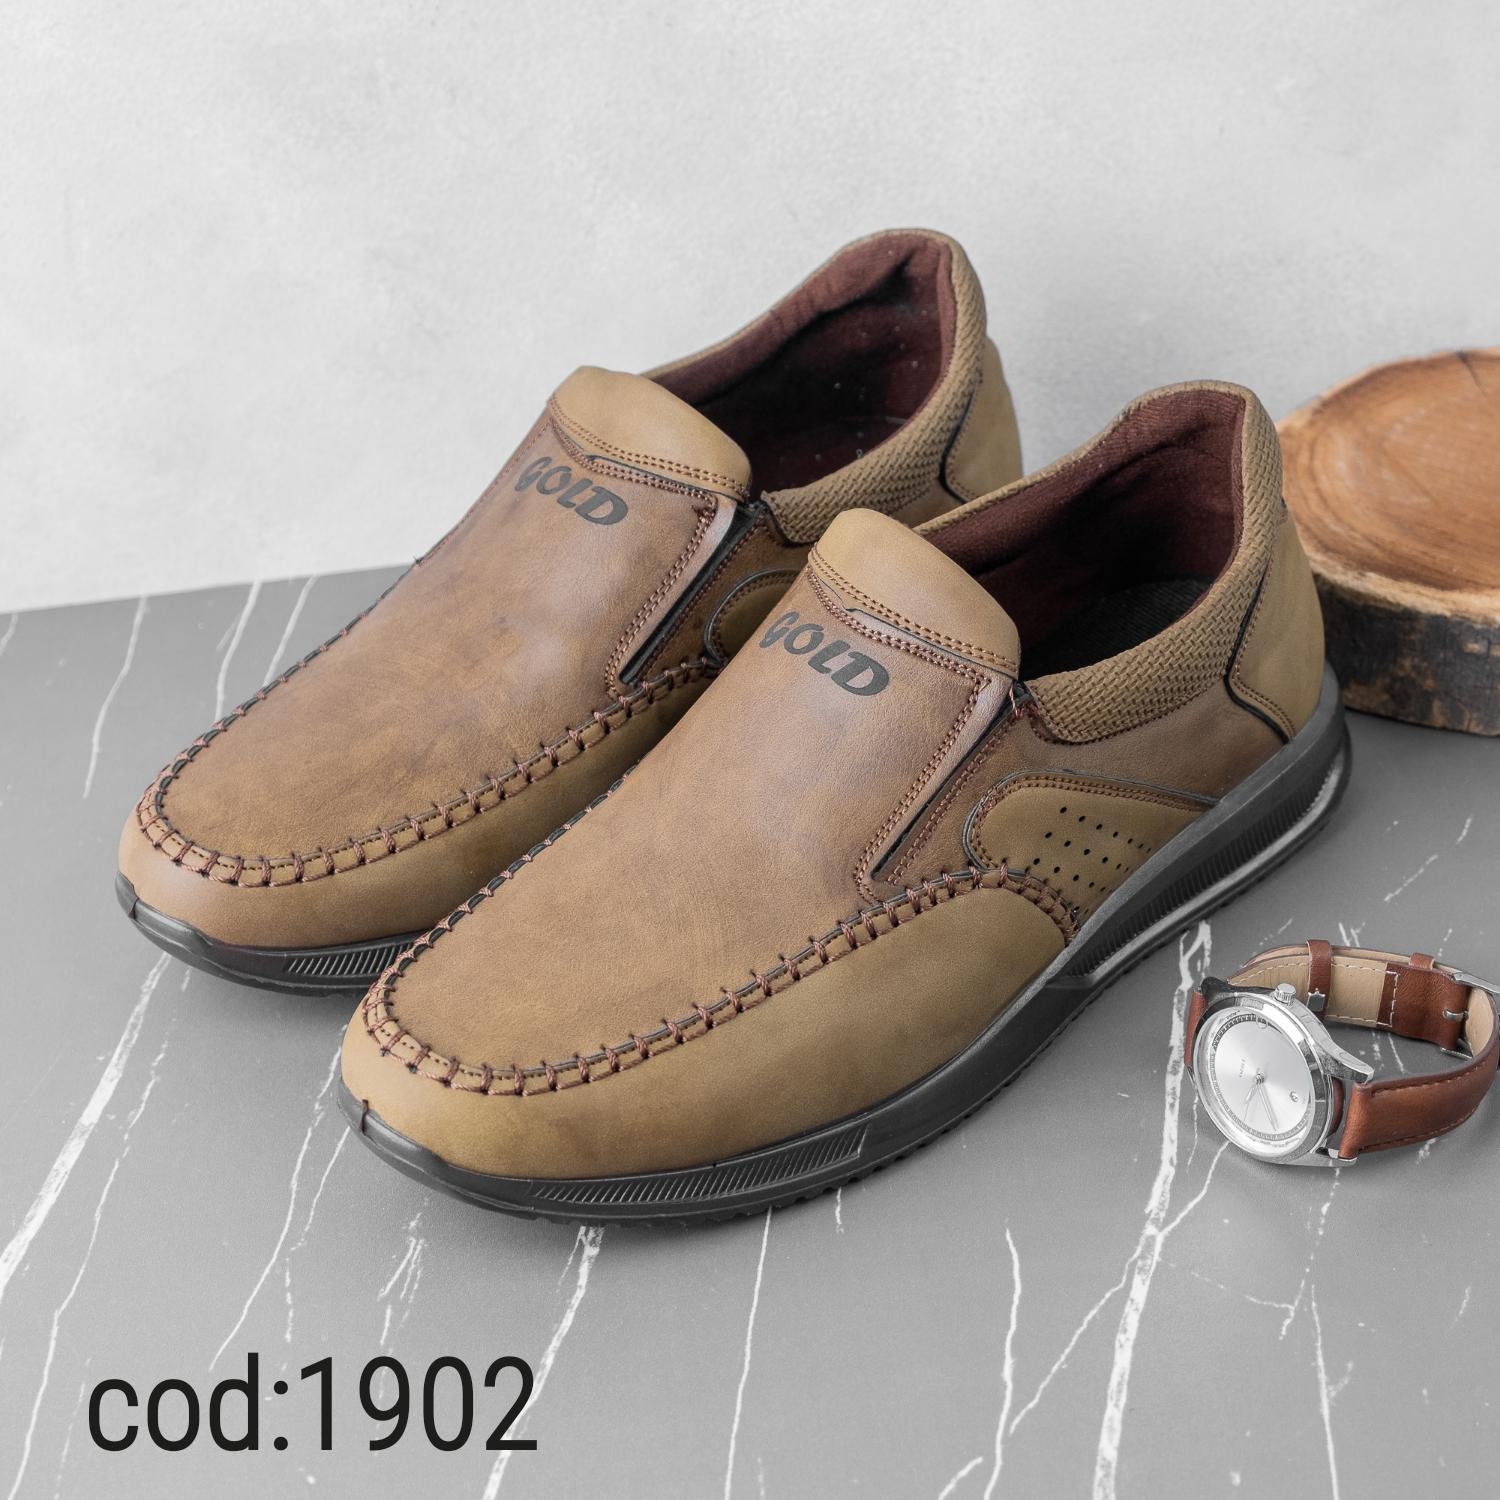  کفش بدون بند گردویی زیره قهوه ای1902gold 